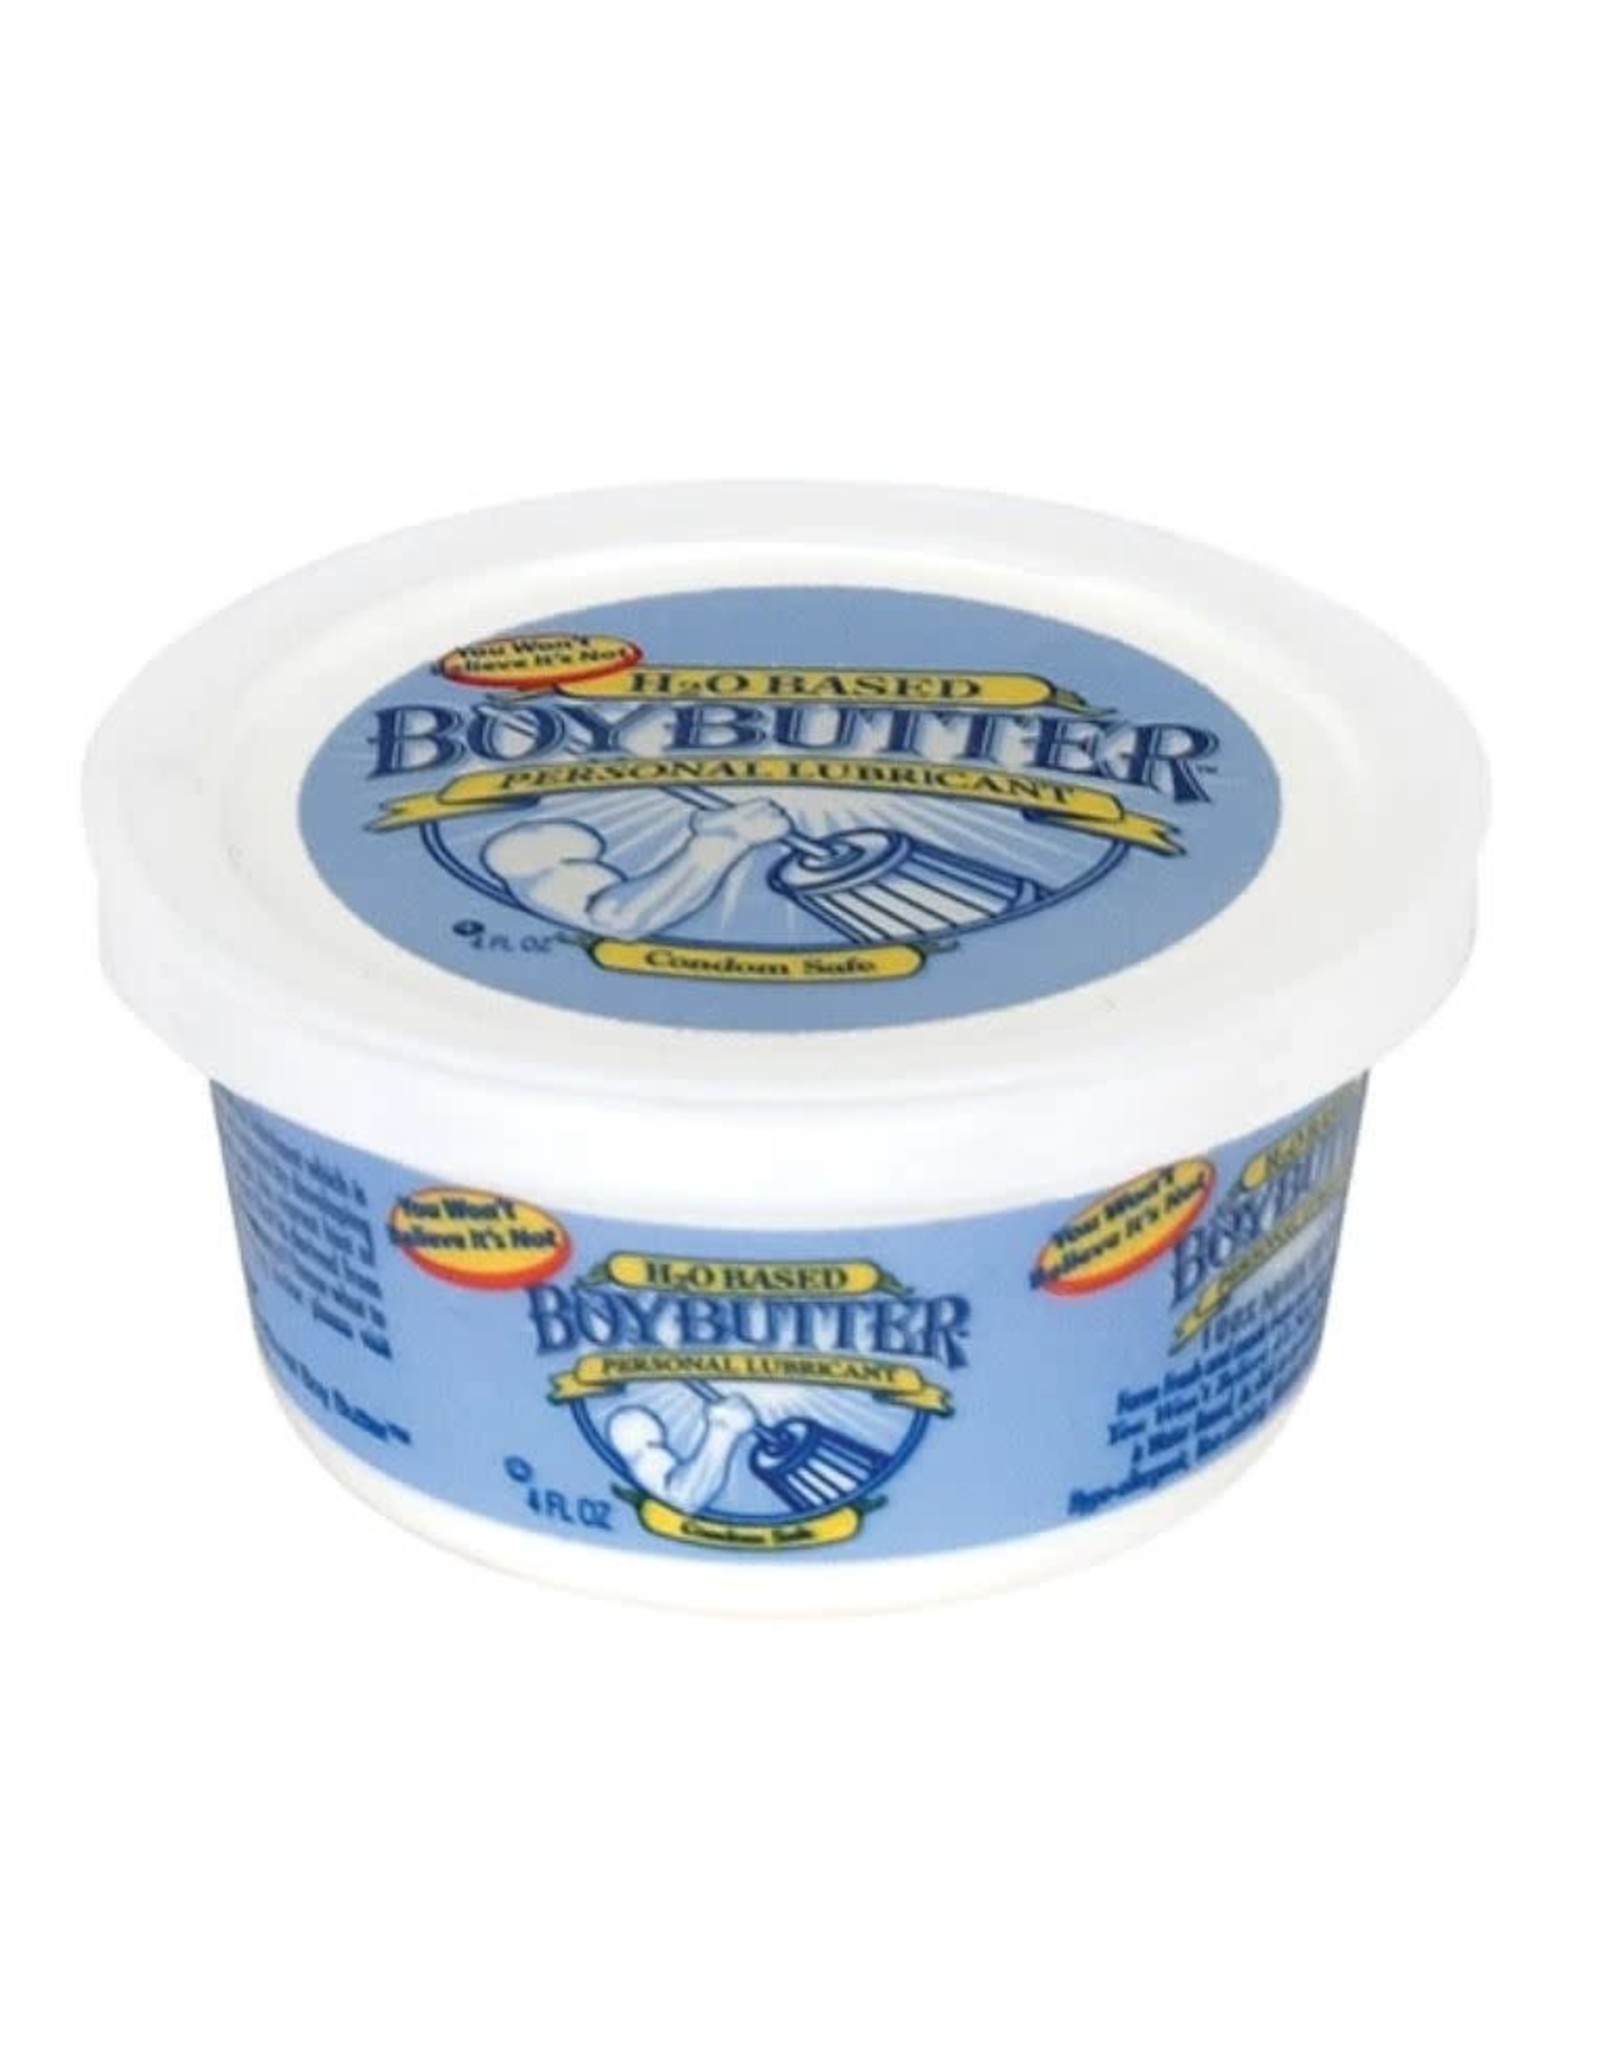 Boy Butter Boy Butter H2O